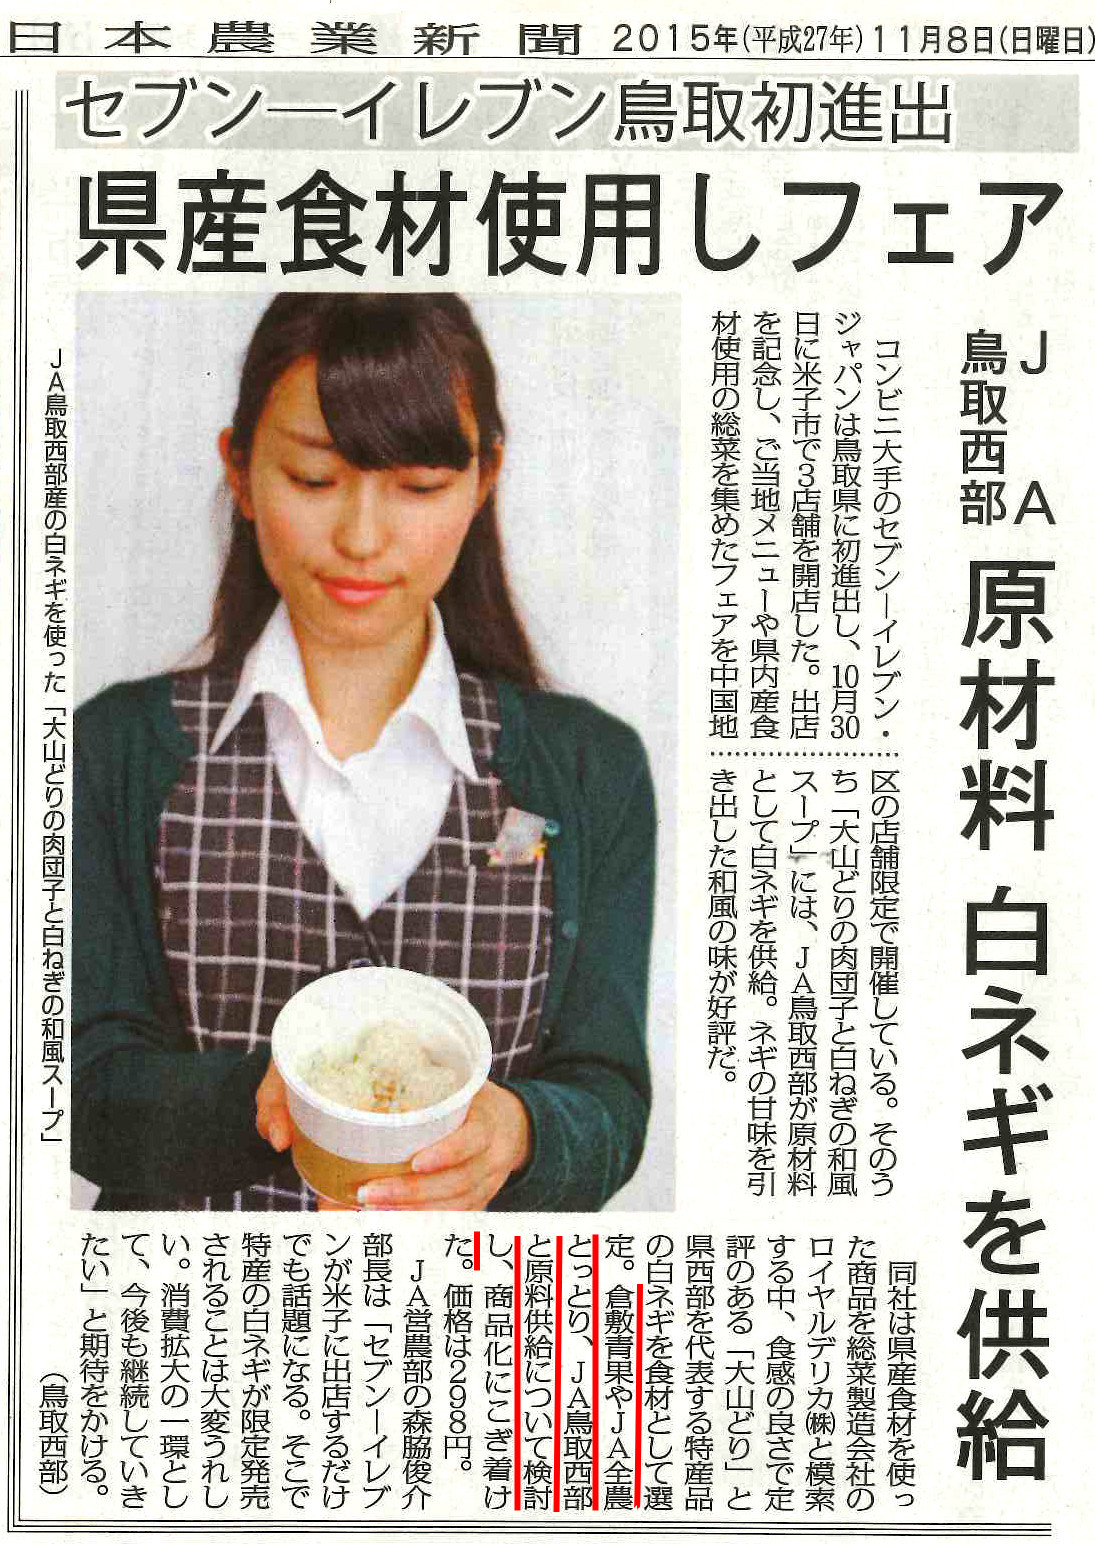 日本農業新聞に鳥取県産白ねぎのコンビニ向け商品について掲載されました クラカグループ 倉敷青果荷受組合